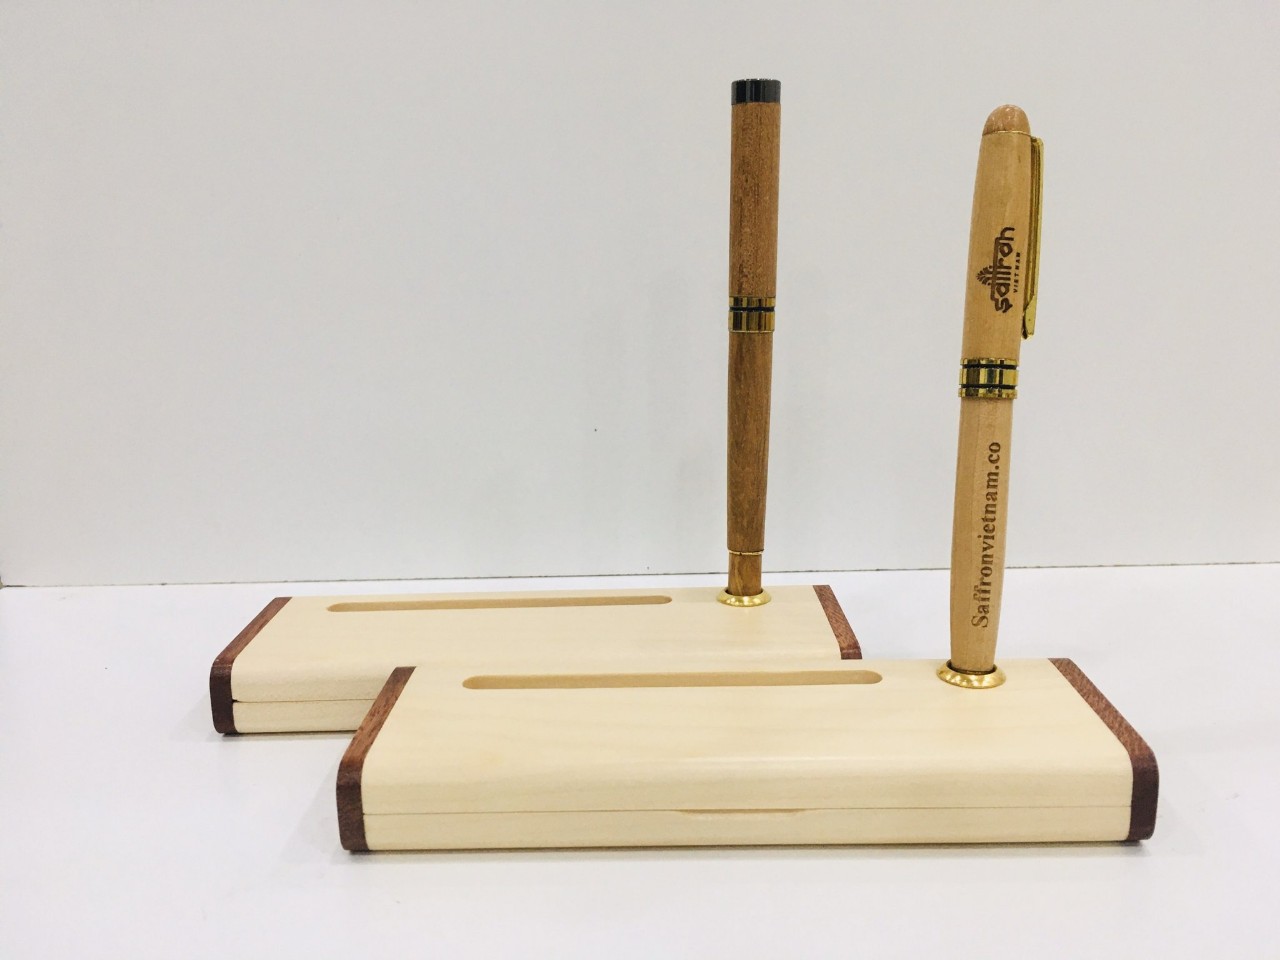 Hộp đựng bút bằng gỗ có độ bền cao